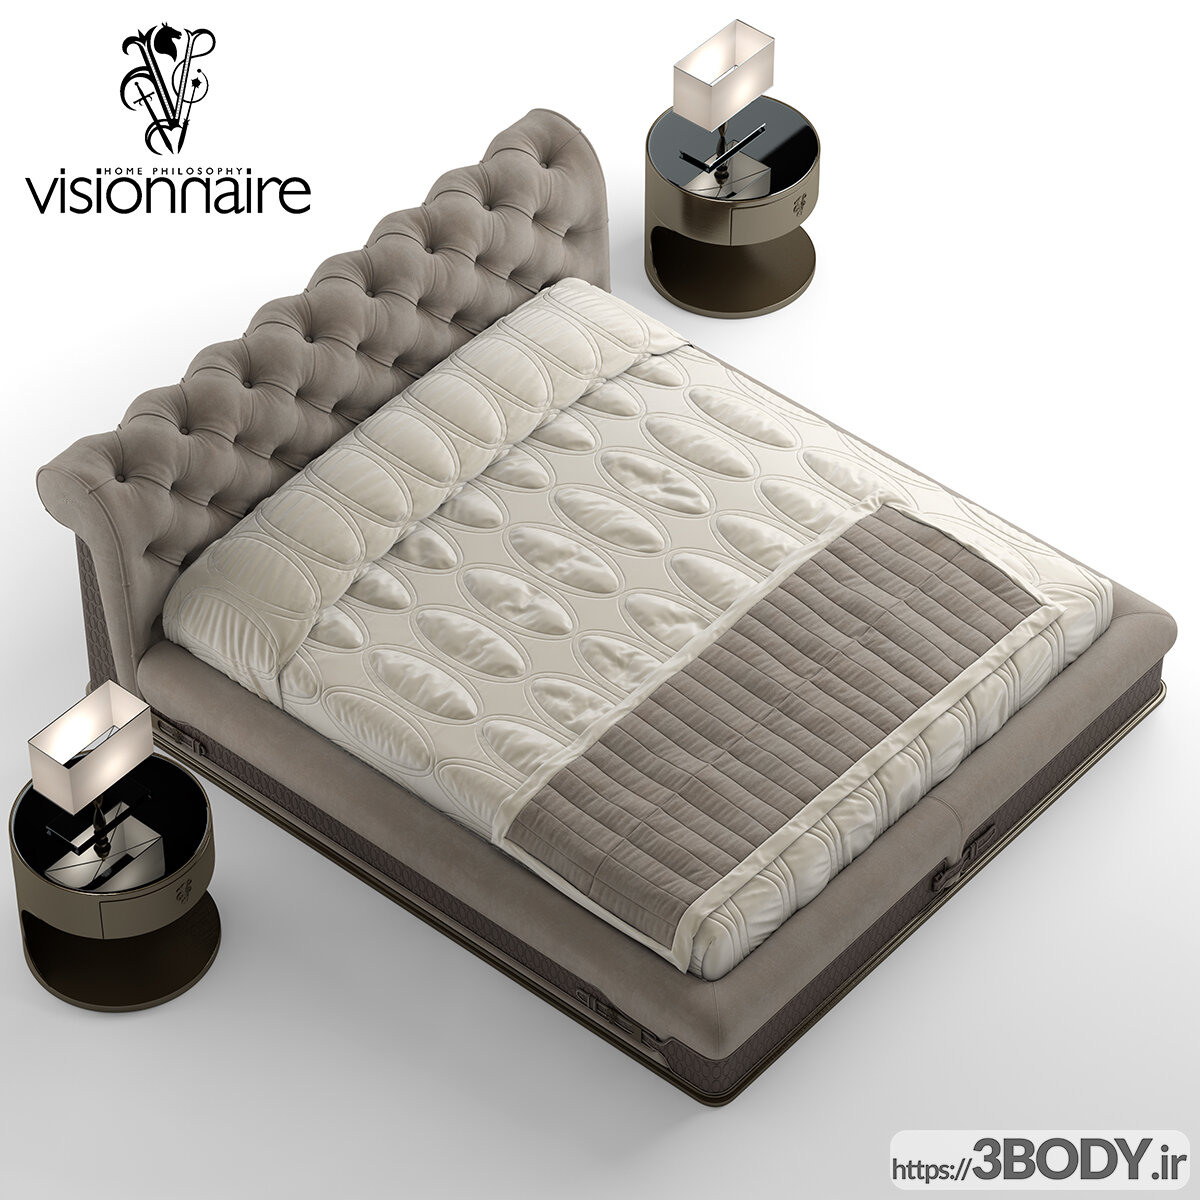 مدل سه بعدی تخت خواب عکس 2